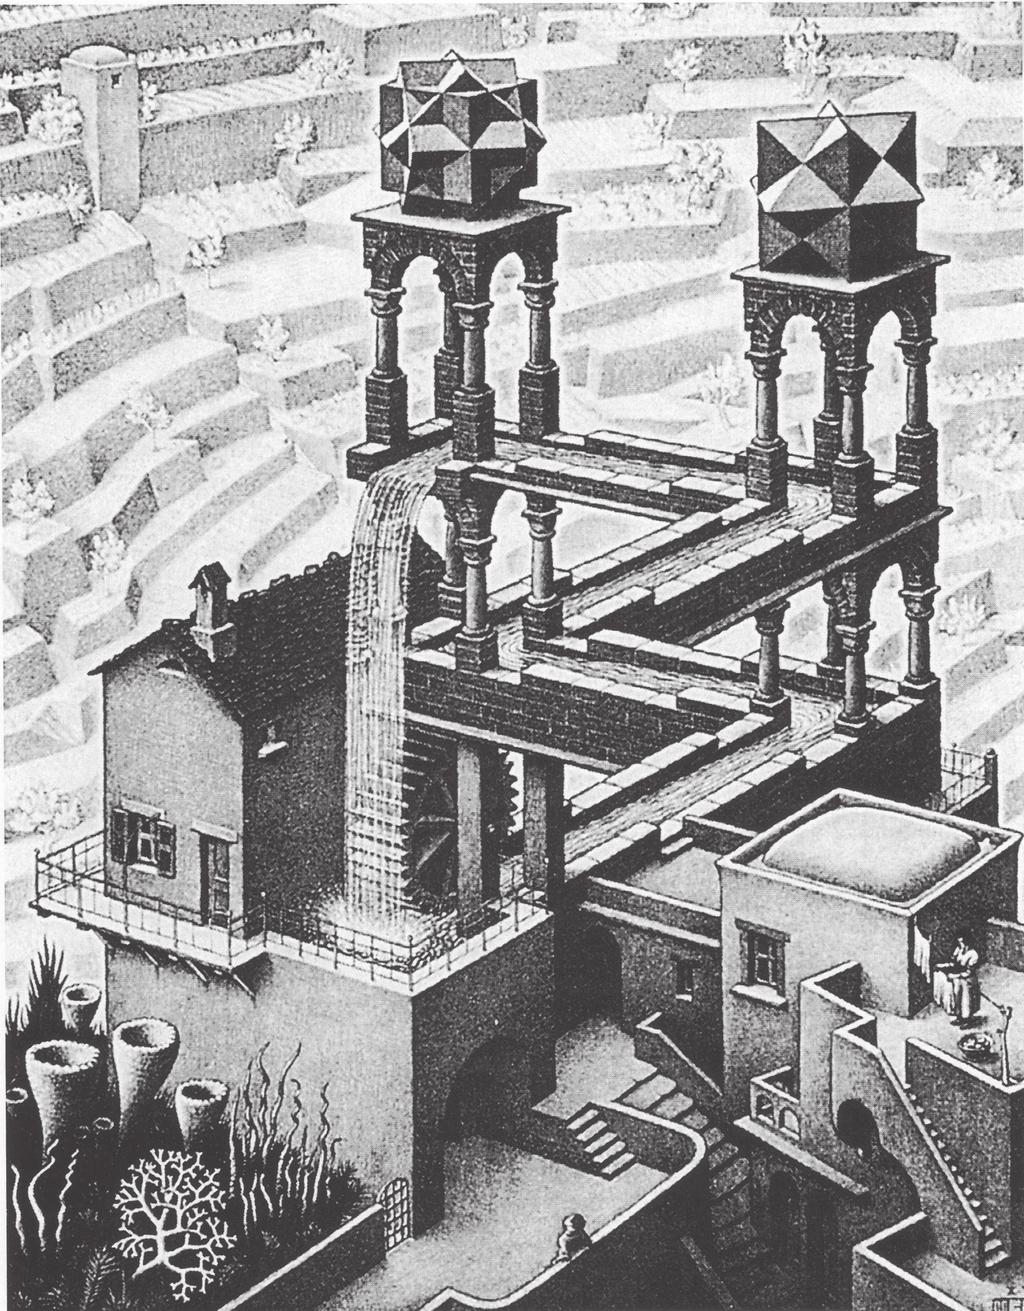 Το ενδιαφέρον που συγκέντρωσε η δουλειά του Escher, δεν ωφείλεται τόσο στον τρόπο της καλλιτεχνικής του έκφρασης, όσο στο γεγονός ότι